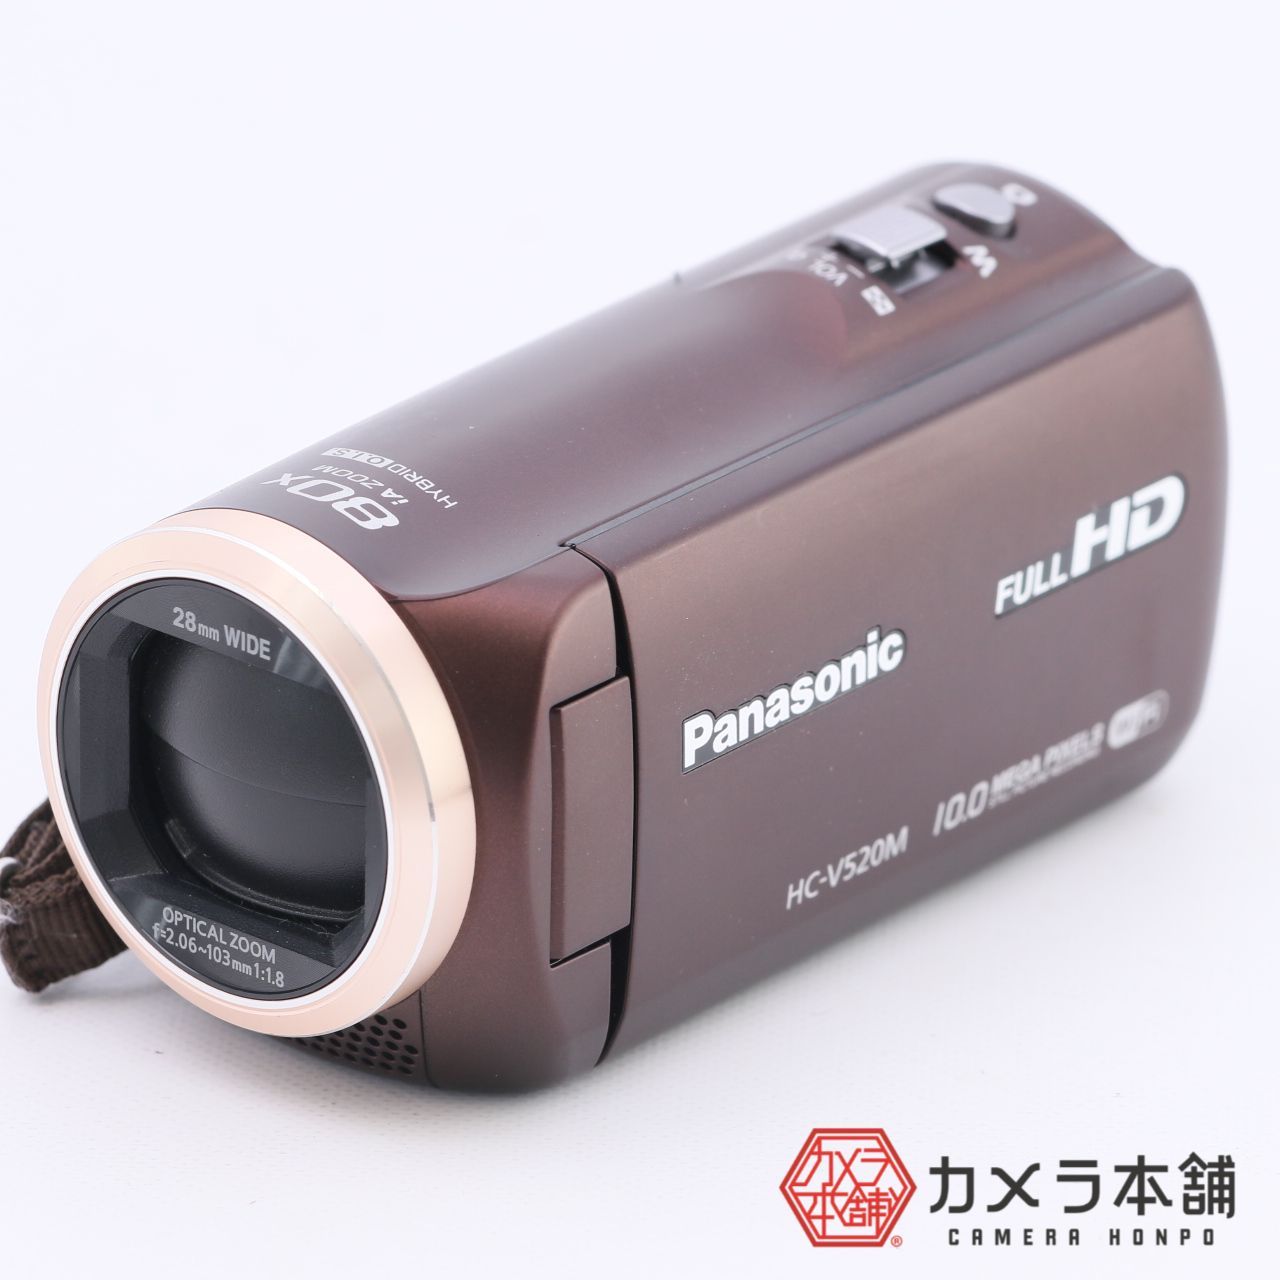 良品‼️ Panasonic デジタルビデオ HC-V520M-T 32GB - ビデオカメラ